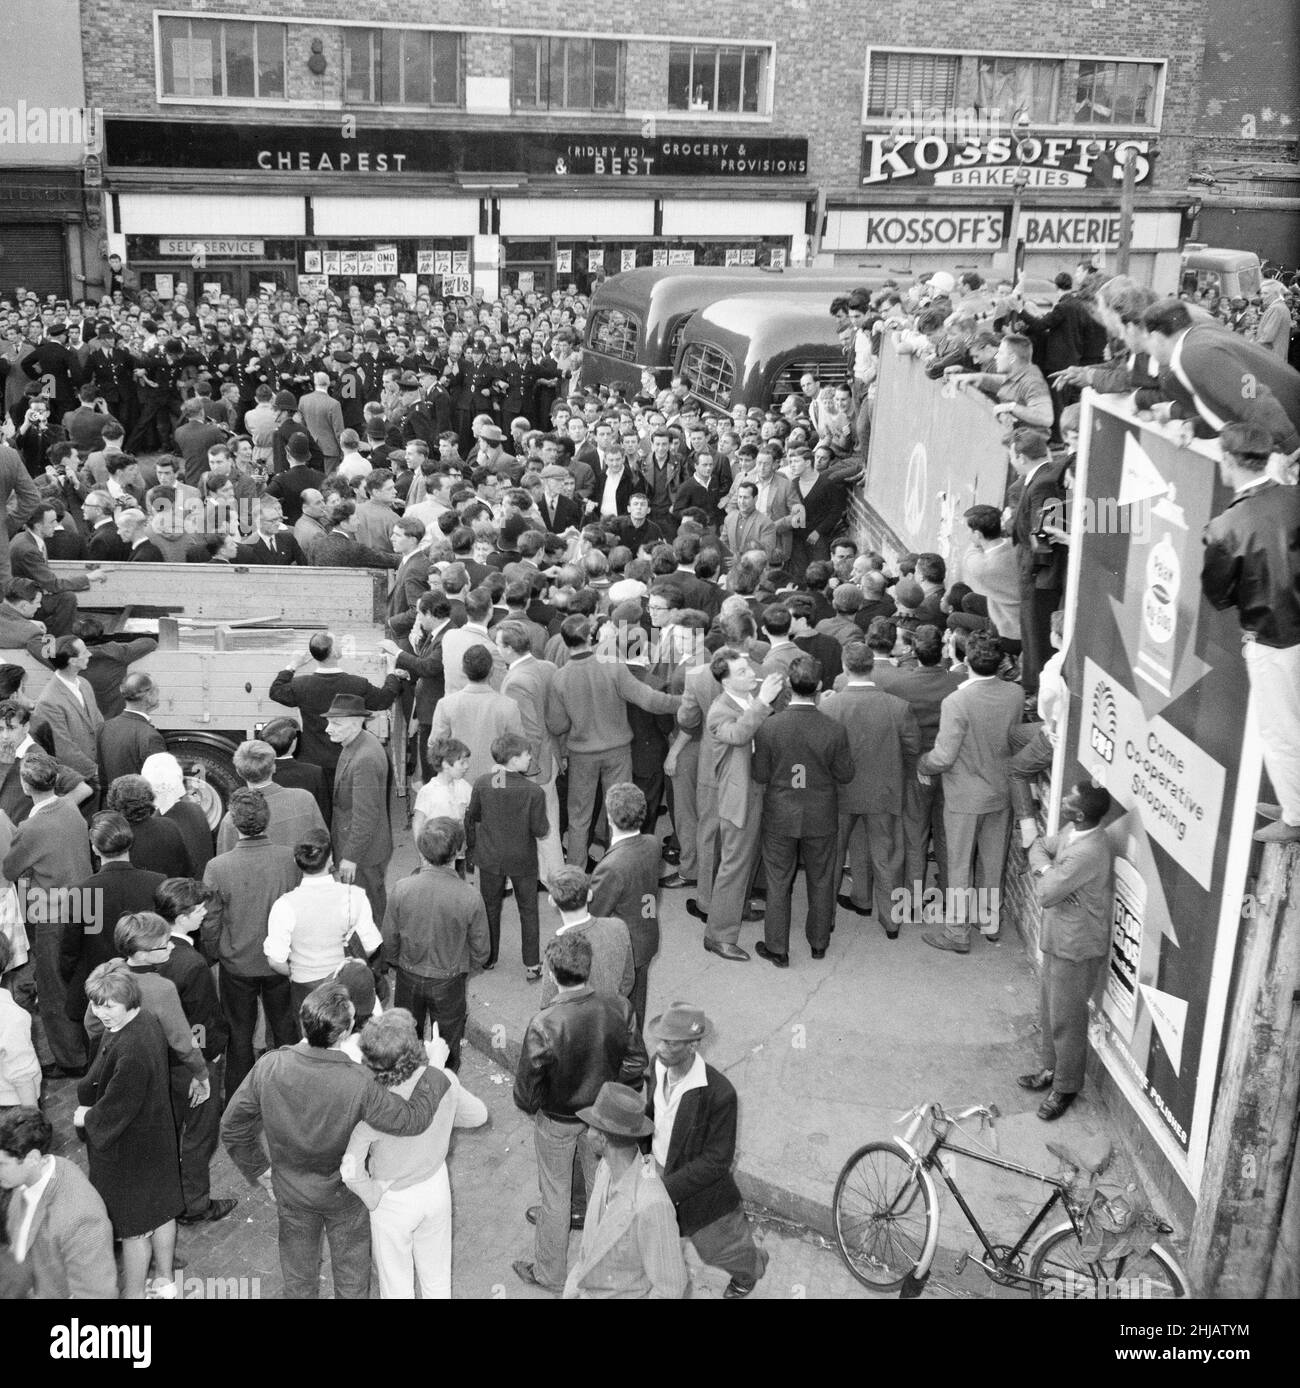 Ridley Road, Londra, martedì 31st luglio 1962. Una grande folla si riunisce nell'East End per interrompere un rally dell'ex leader fascista Sir Oswald Mosley e dei membri del suo gruppo antisemita Blackshirt che avevano pianificato un rally nell'East End di Londra. Mosley e il suo gruppo furono assaliti e punzonati a terra non appena il suo incontro si aprì a Ridley Road, Dalston. La polizia ha chiuso la riunione entro i primi tre minuti e ha fatto 54 arresti, uno dei quali era il figlio di Sir Oswald Max. Foto Stock